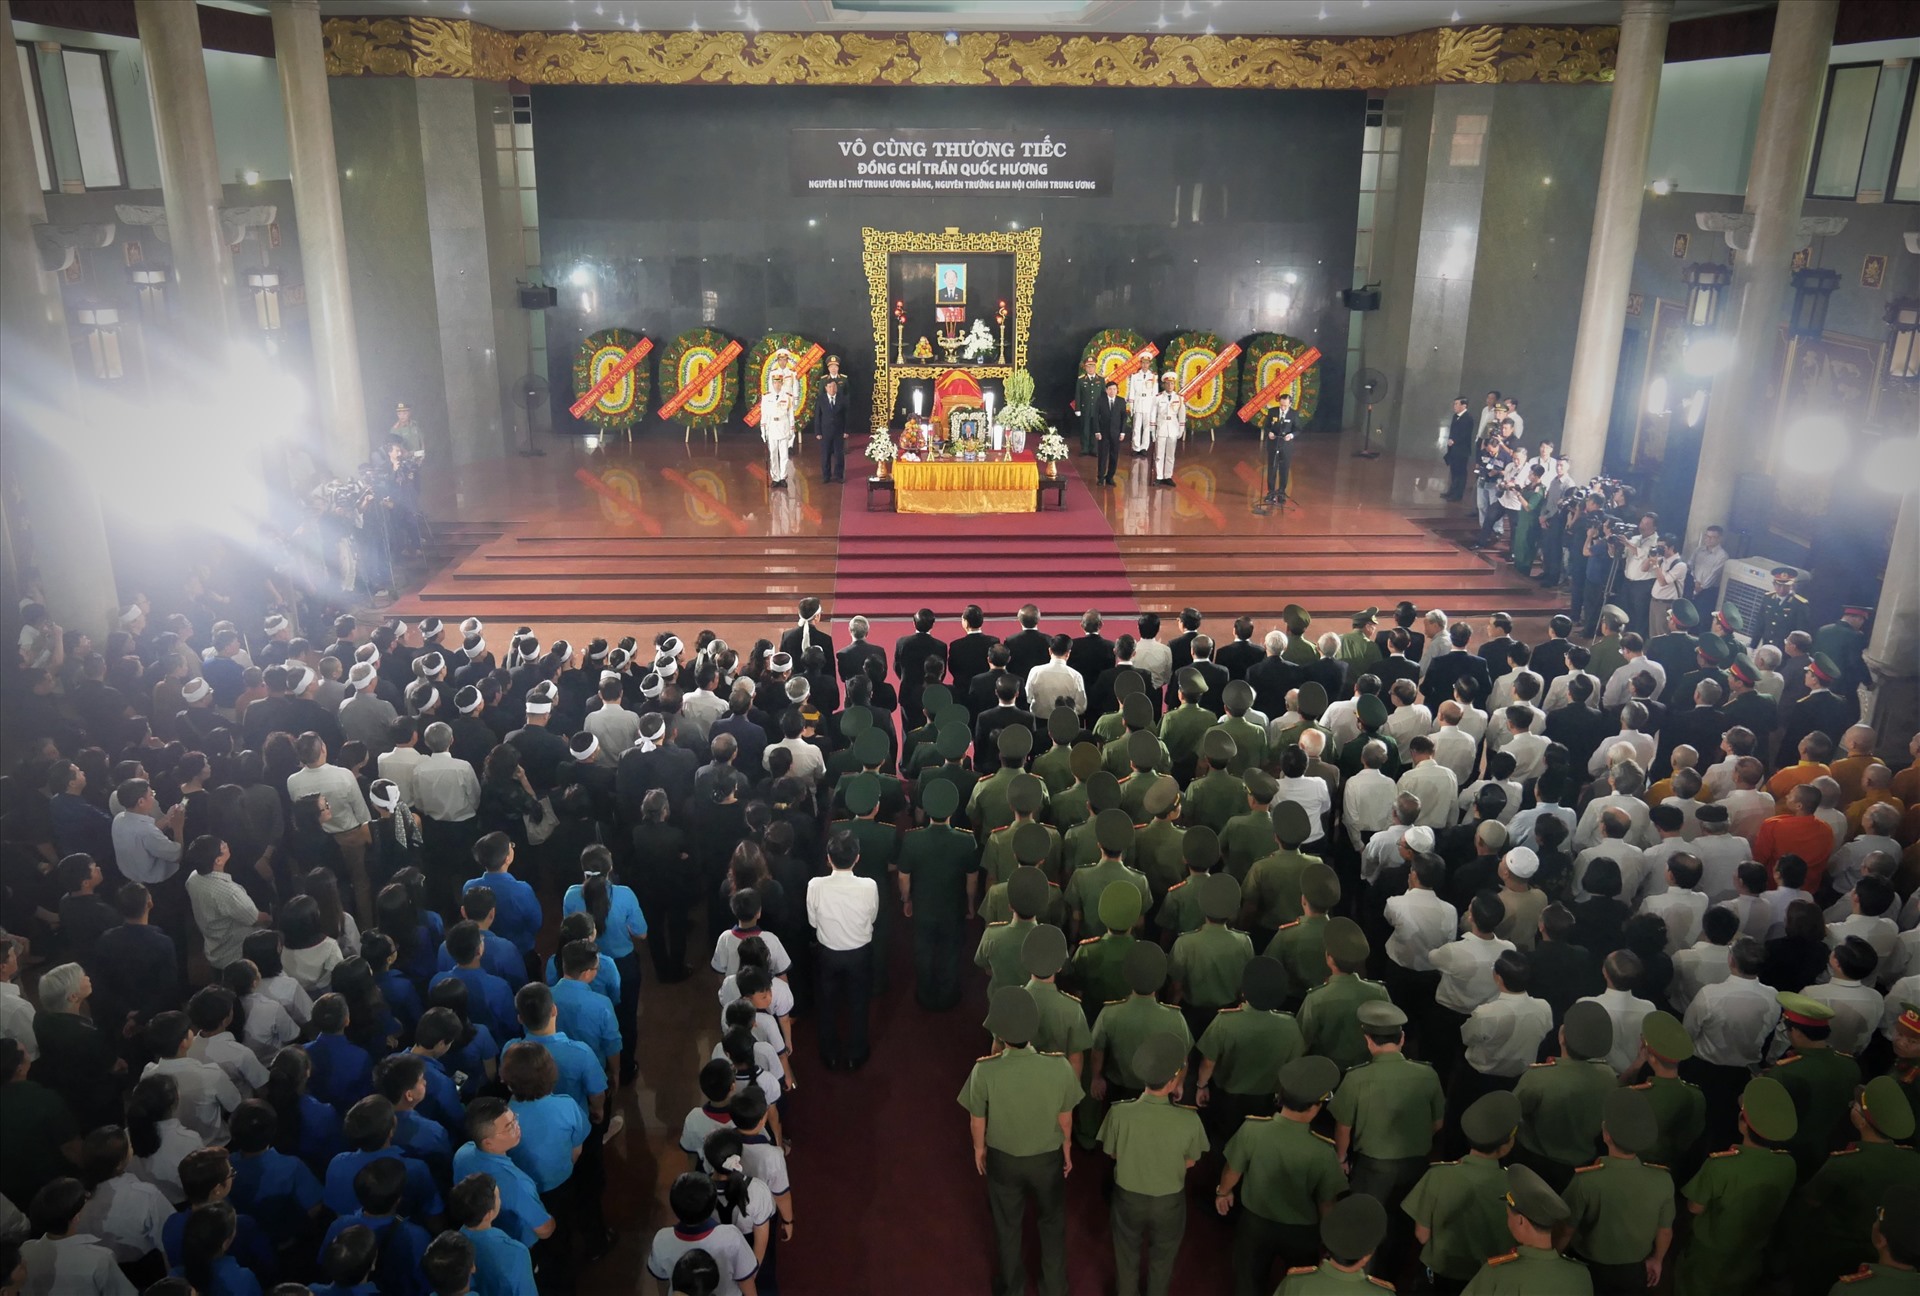 Sáng 17.6, hàng ngàn người có mặt từ sớm tại nhà tang lễ Bộ Quốc phòng để tiễn đưa ông Trần Quốc Hương về với đất mẹ.